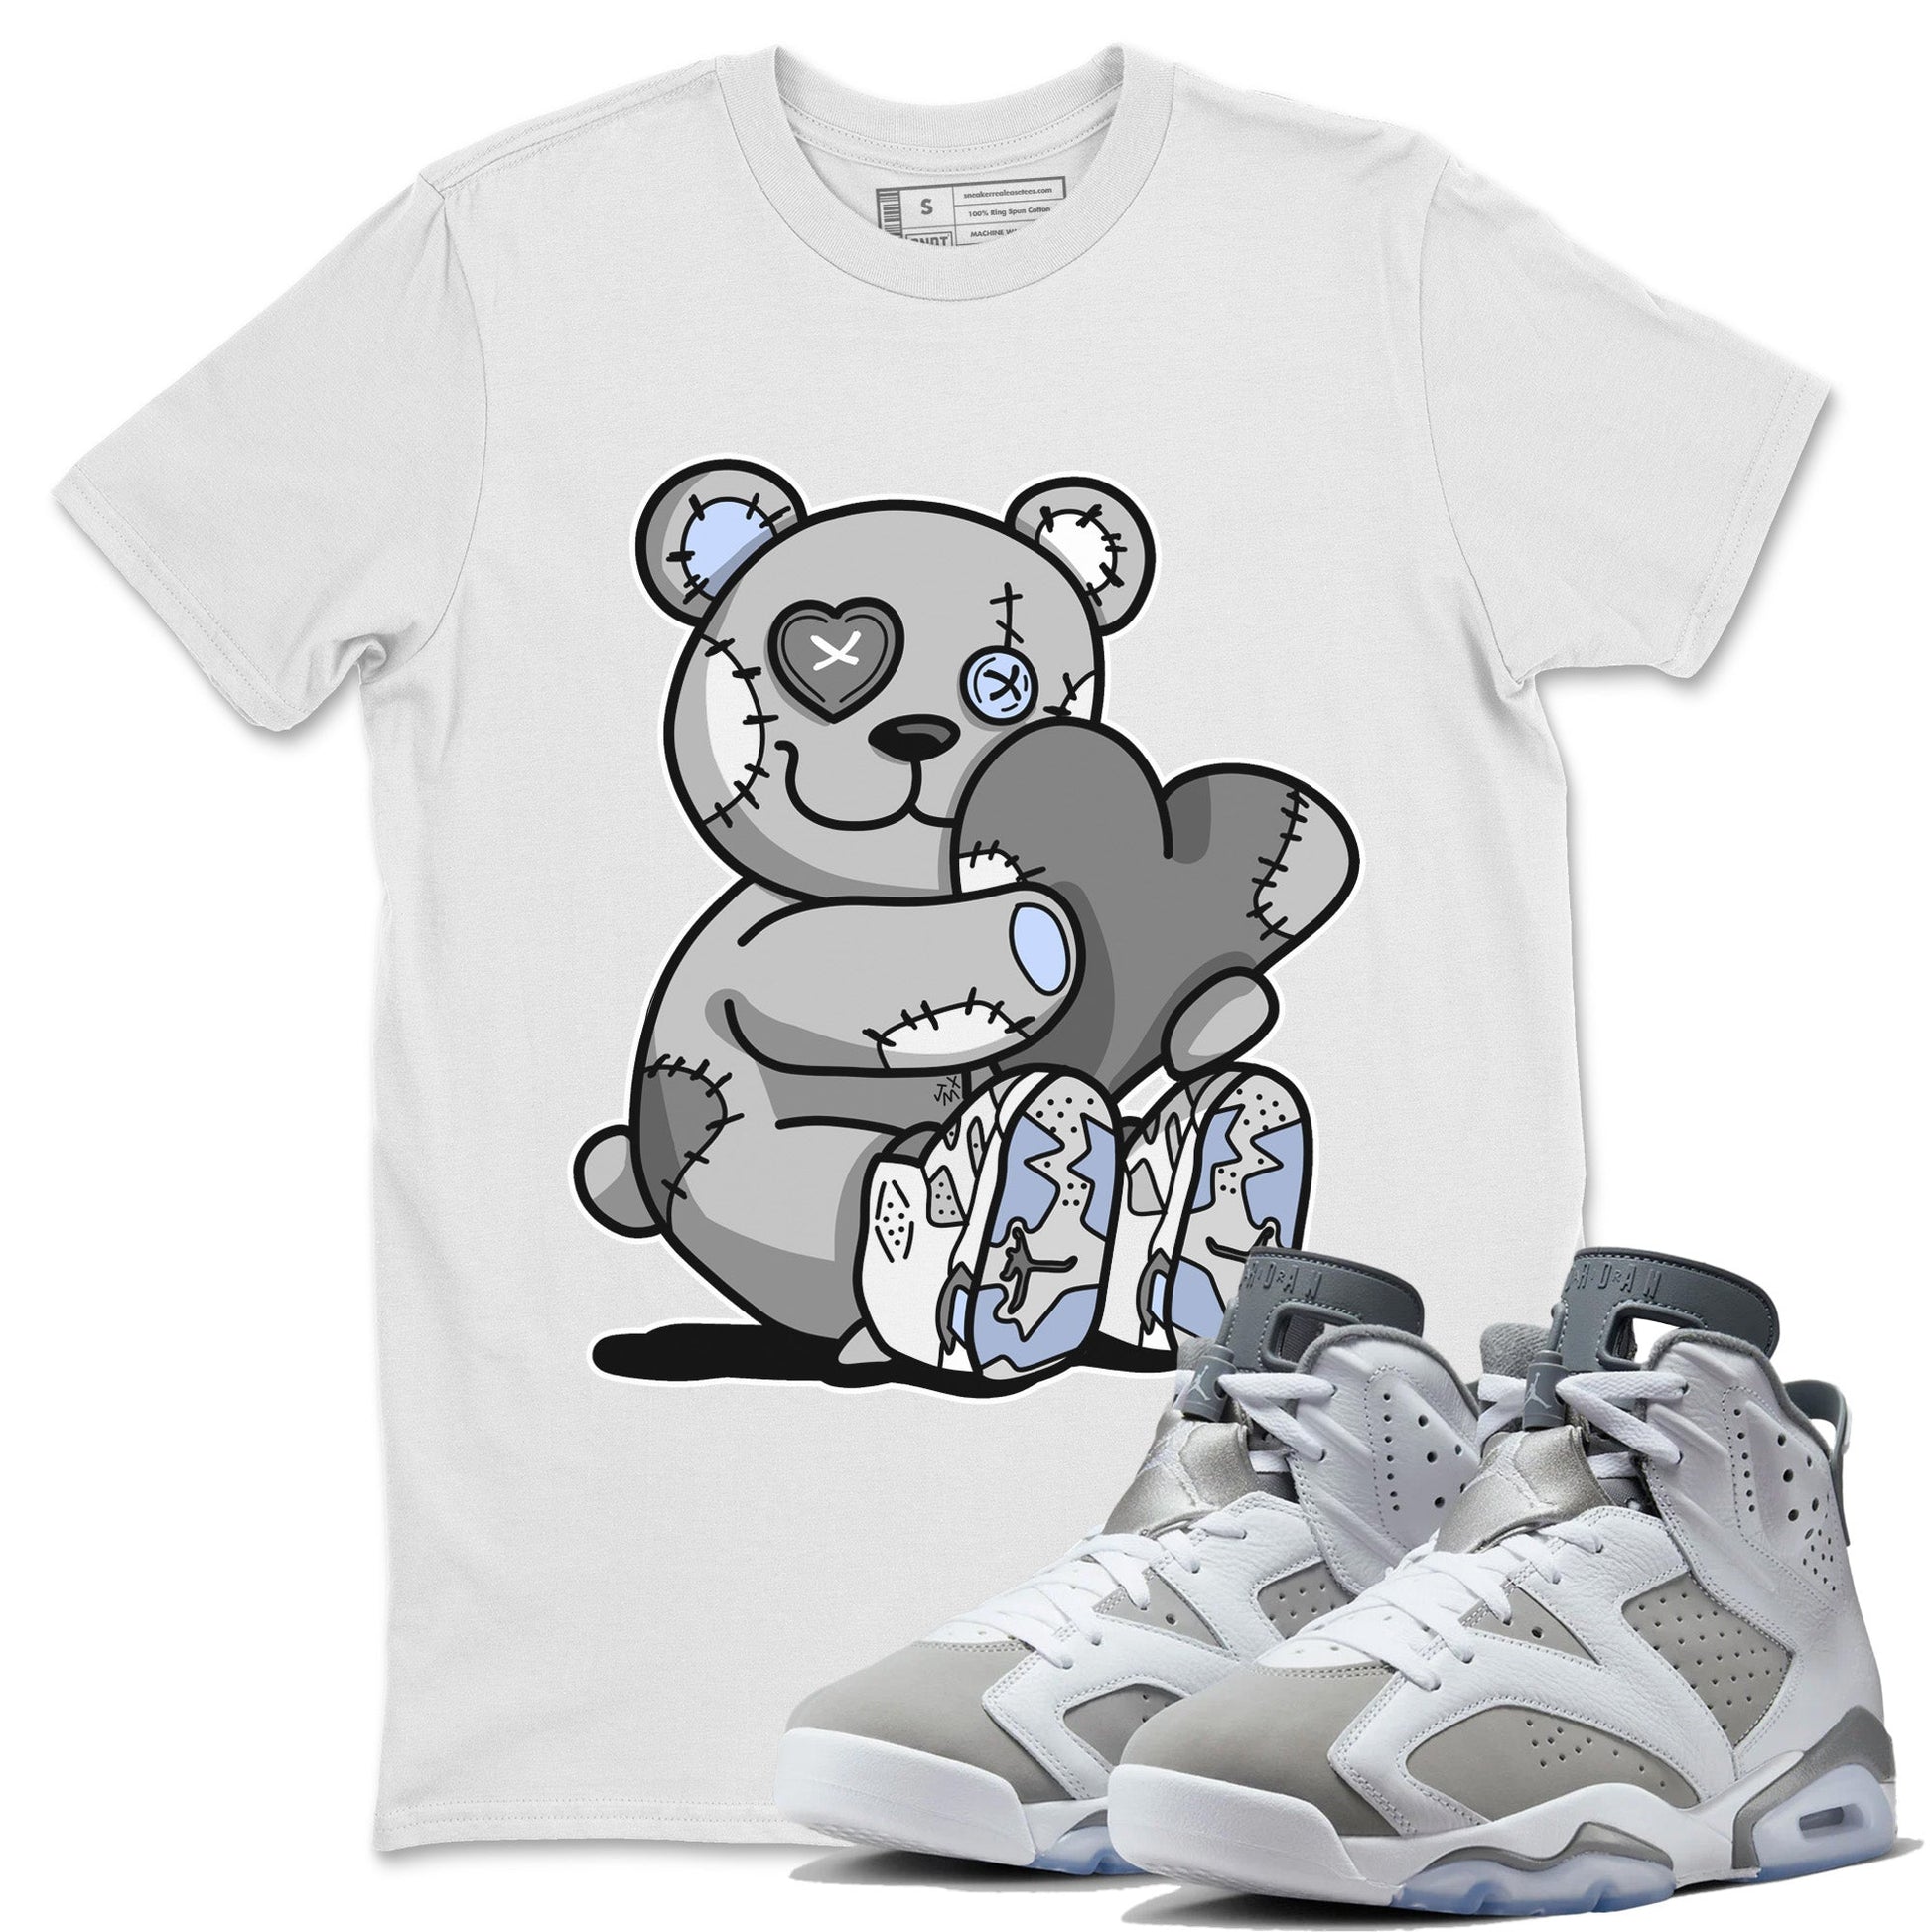 Jordan 6 Cool Grey Sneaker Match Tees Hugging Bear Sneaker Tees Jordan 6 Cool Grey Sneaker Release Tees Unisex Shirts